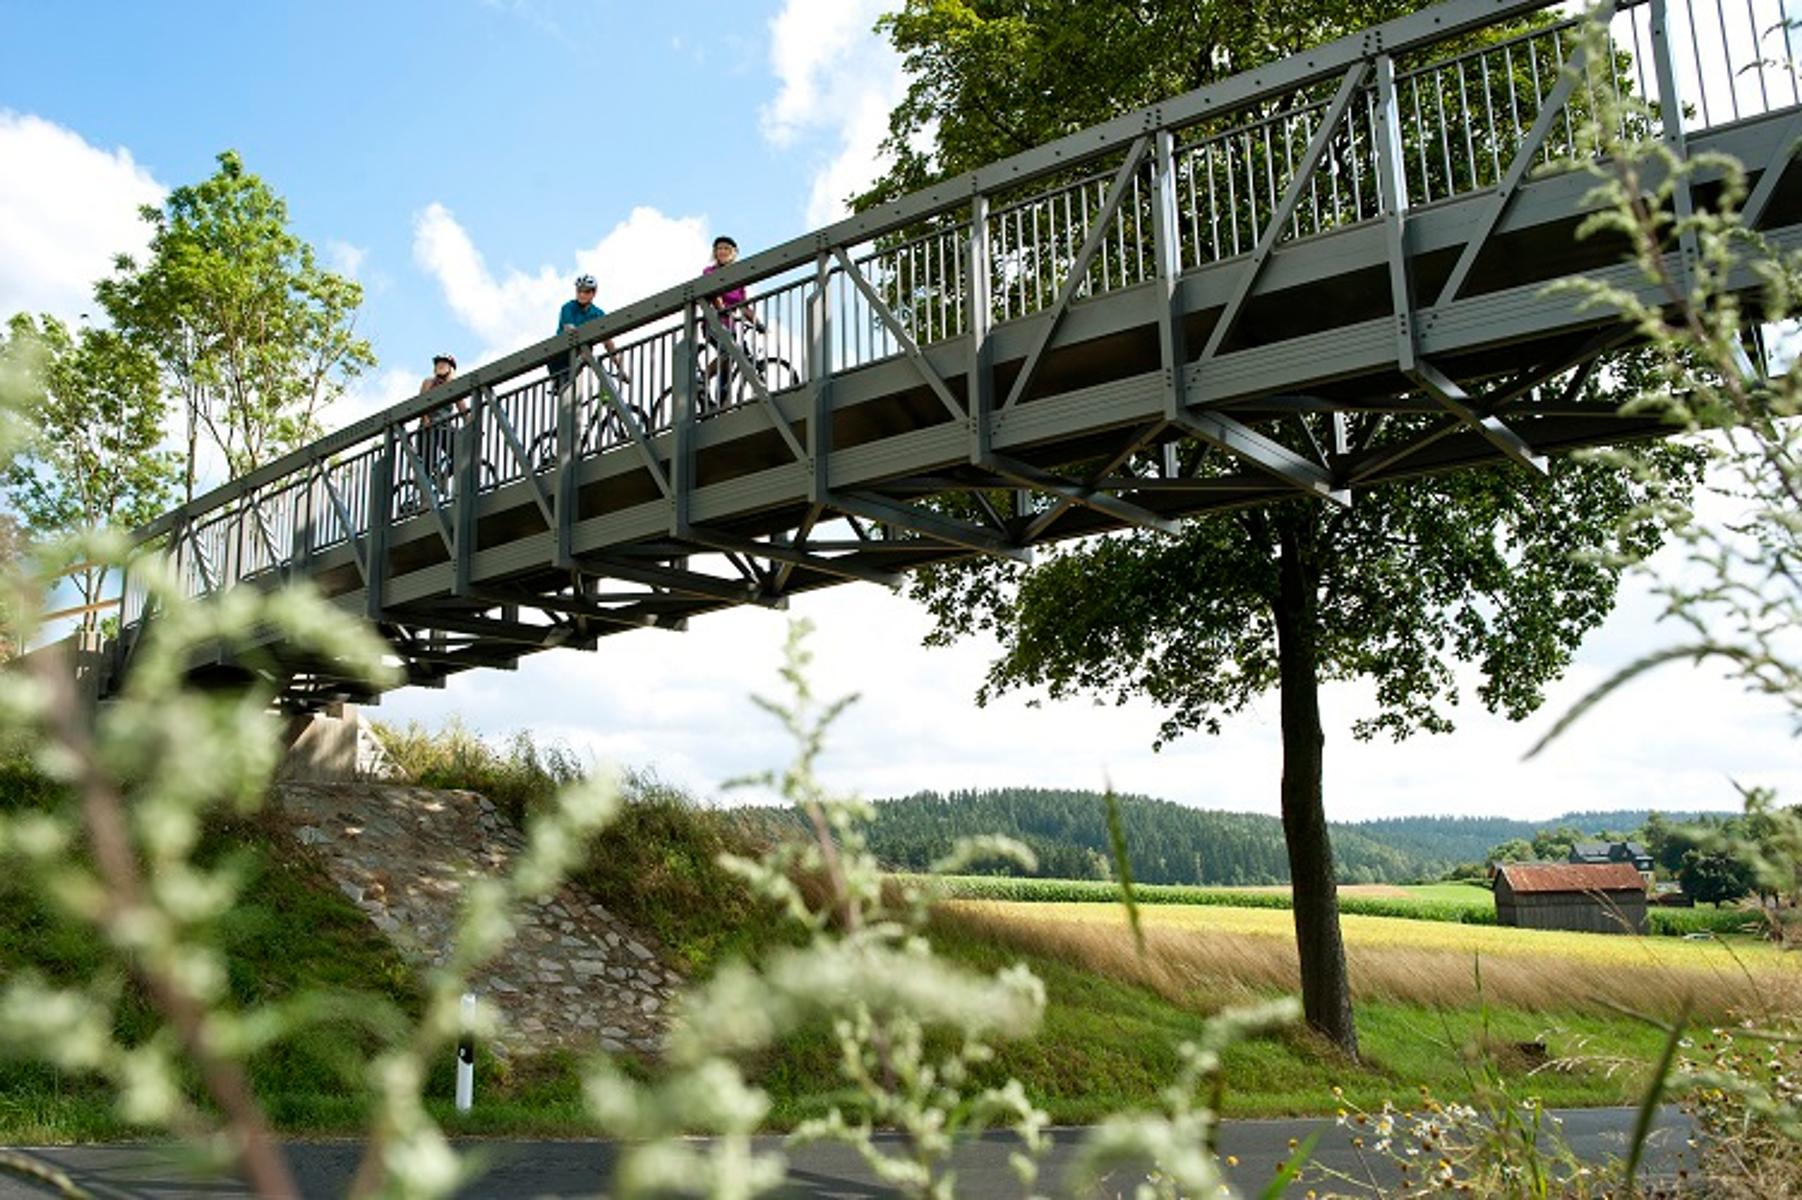     Der Brückenradweg Bayern-Böhmen ist 56 Km lang und führt zwischen Fichtelberg und der tschechischen Stadt Asch durch die Landschaft des Fichtelgebirges.